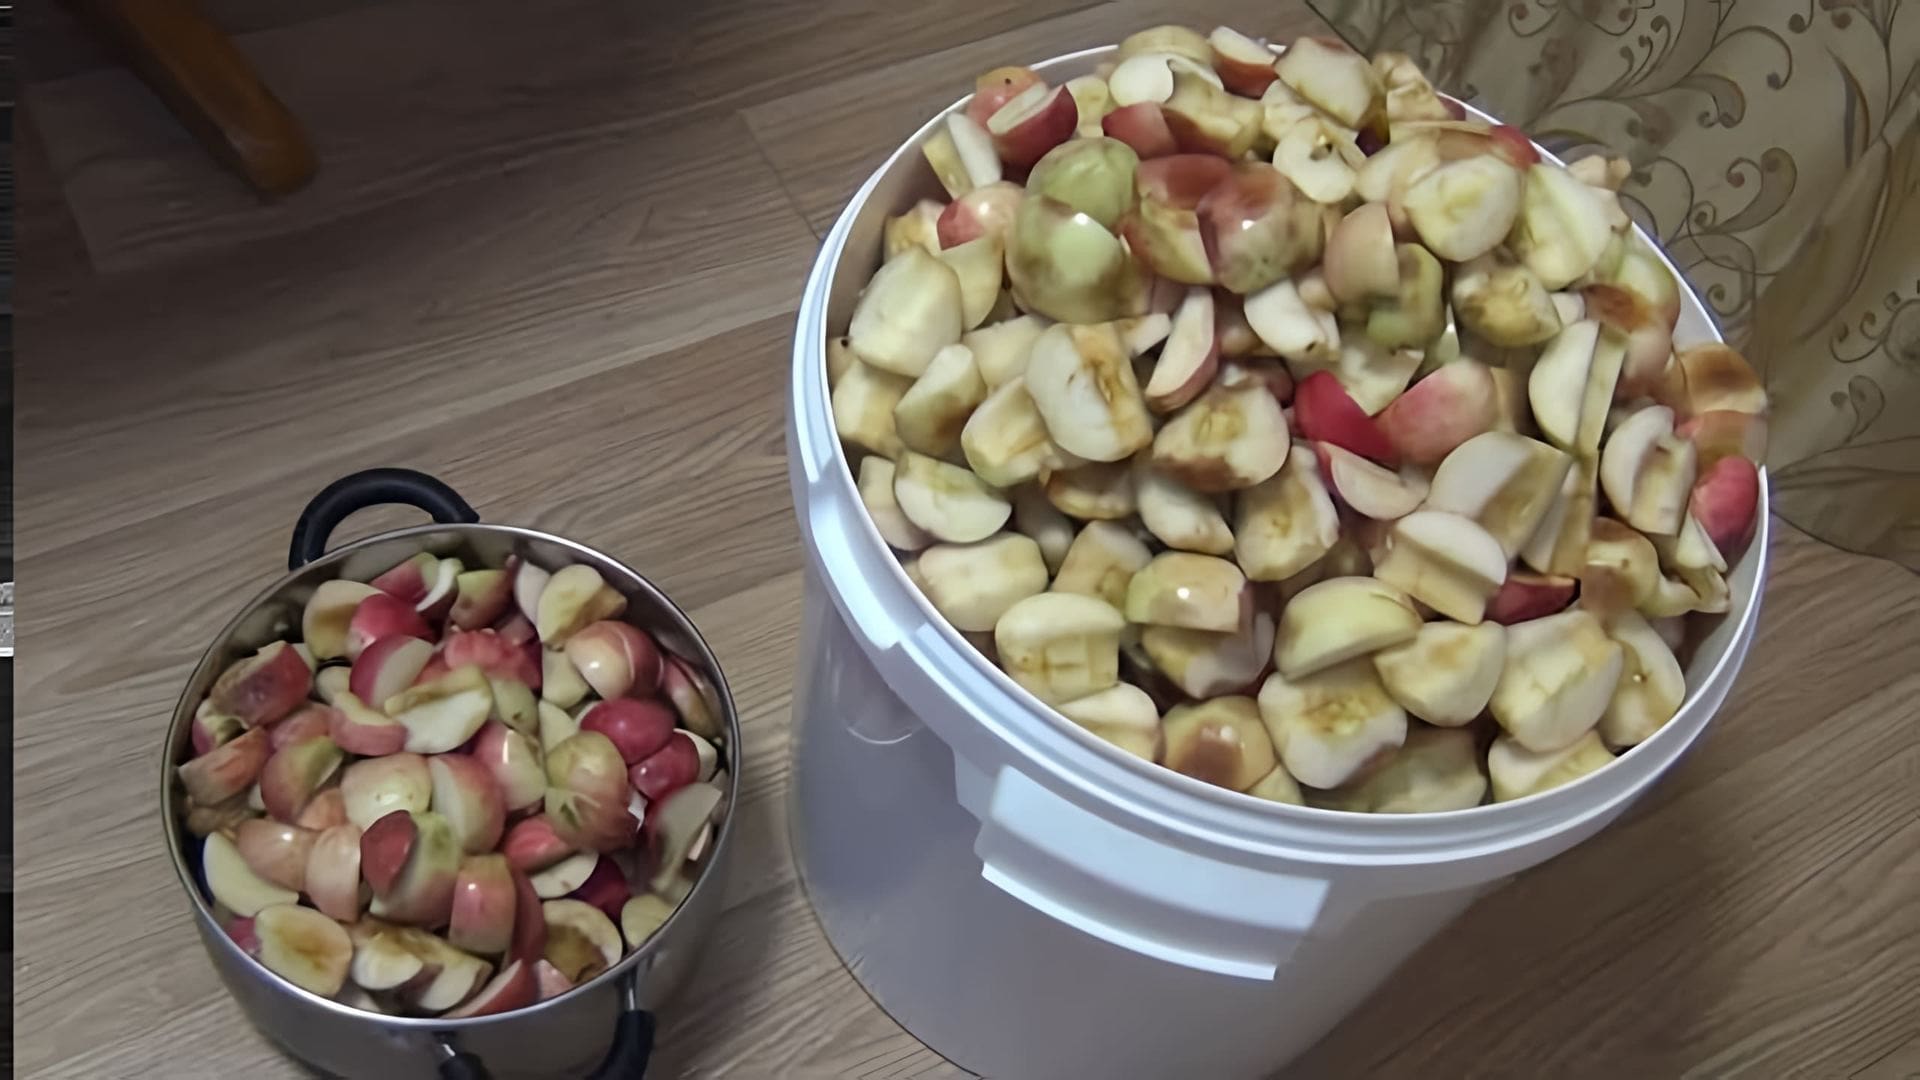 В данном видео демонстрируется процесс приготовления яблочного самогона или кальвадоса